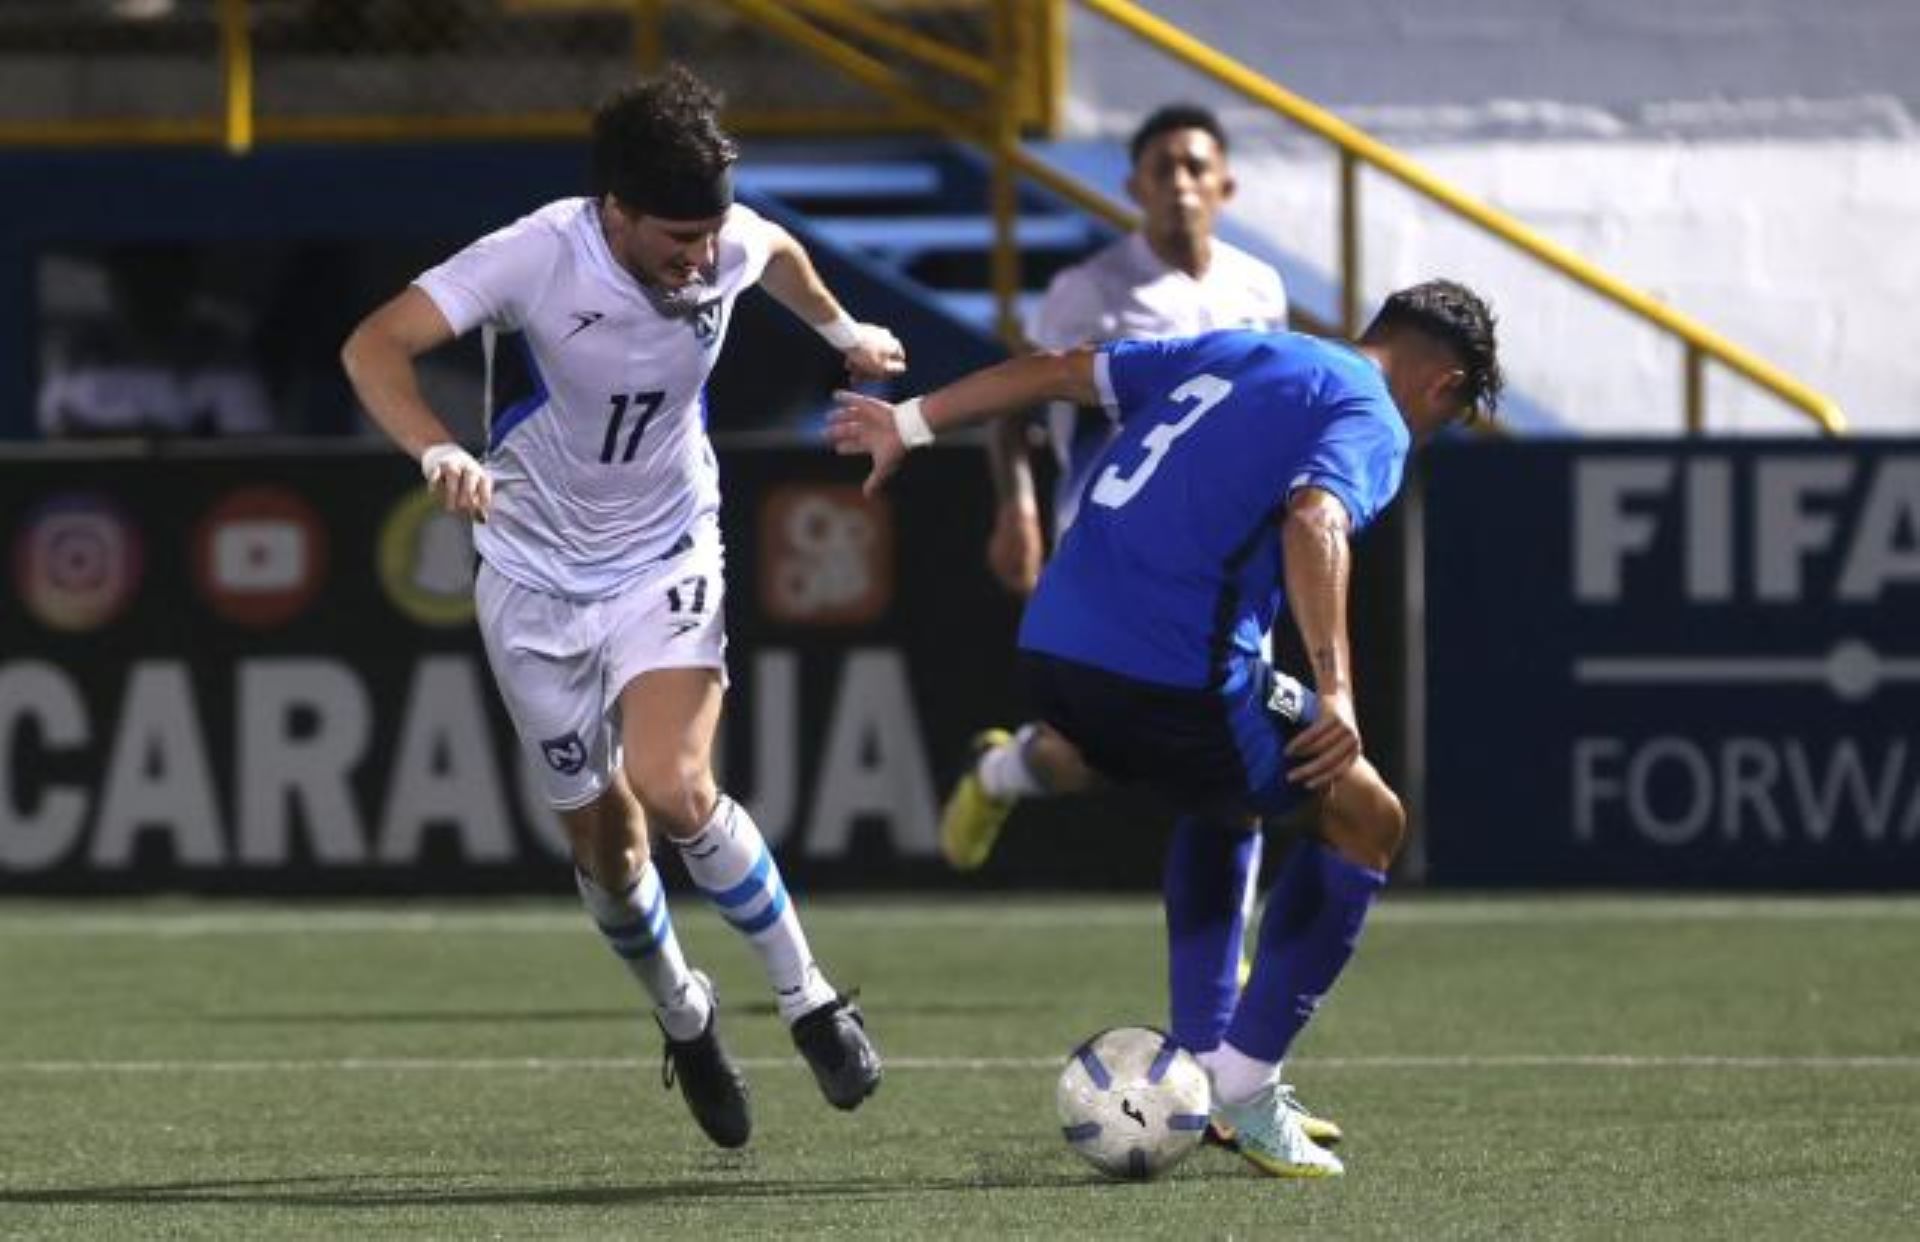 Elogios para los chochos. Concacaf destaca el avance del fútbol de Nicaragua incluso más que el salvadoreño. 